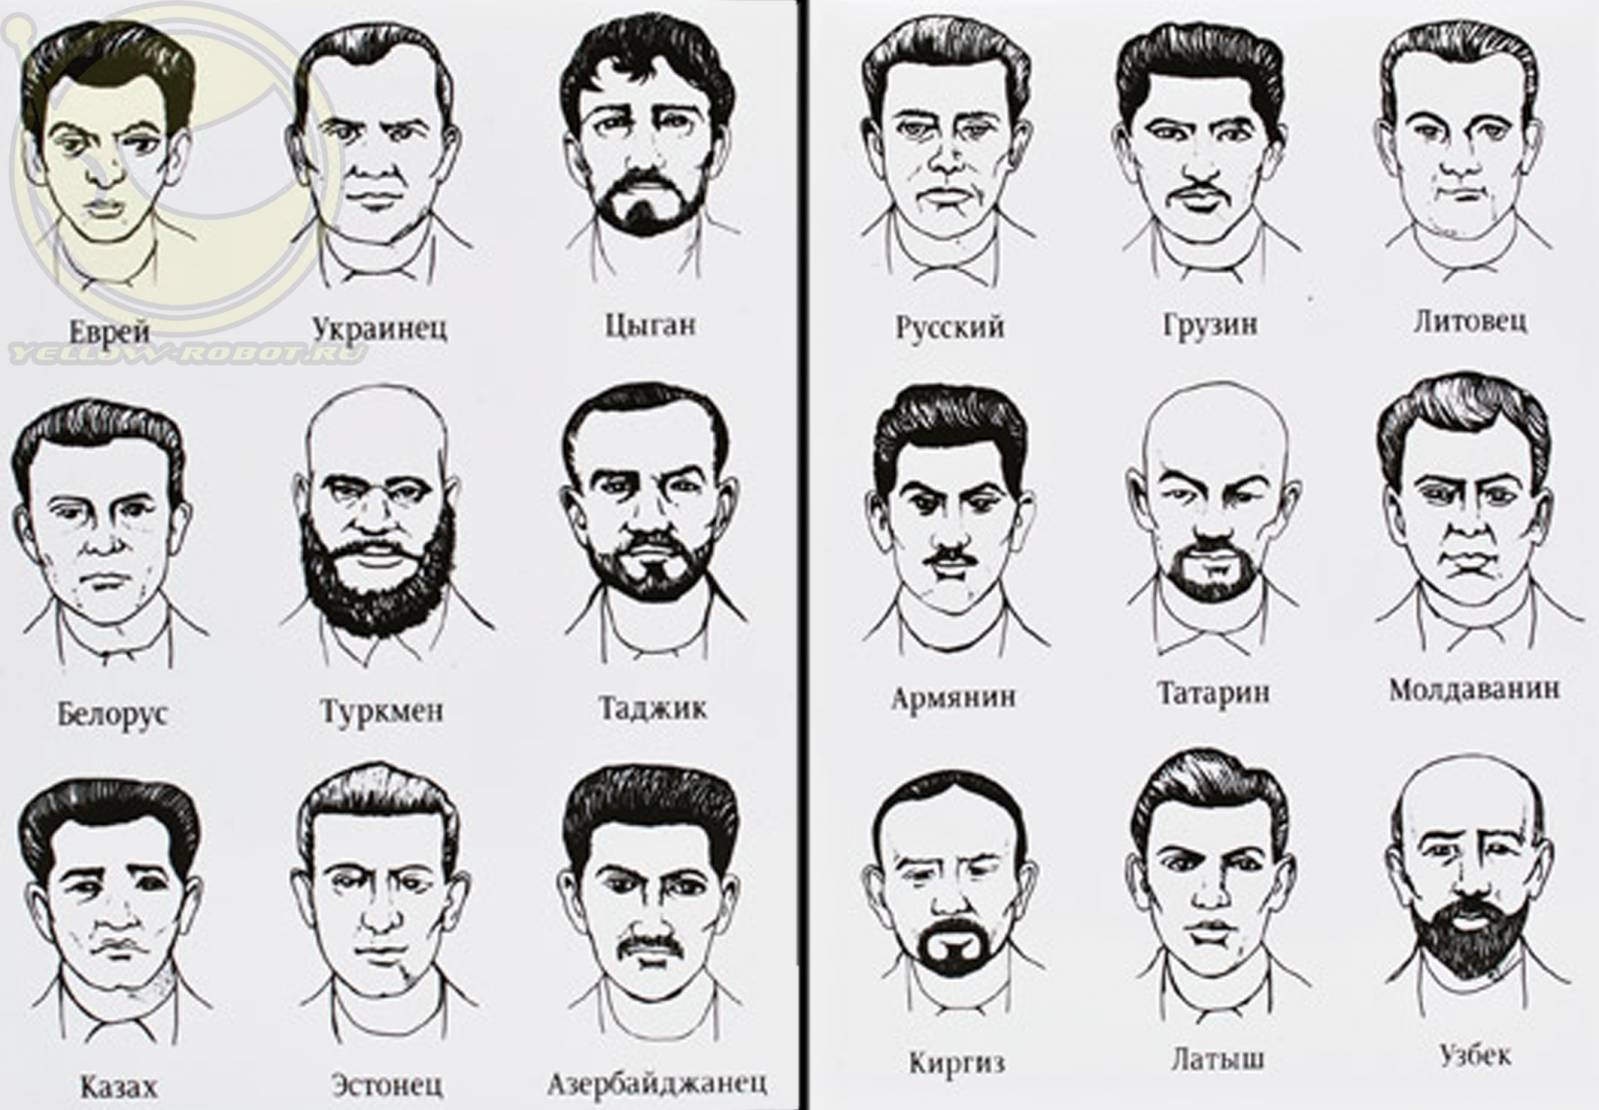 Как таджика отличить от узбека по внешности. Белорусы внешность. Портреты национальностей. Виды национальностей. Лица людей по национальностям.